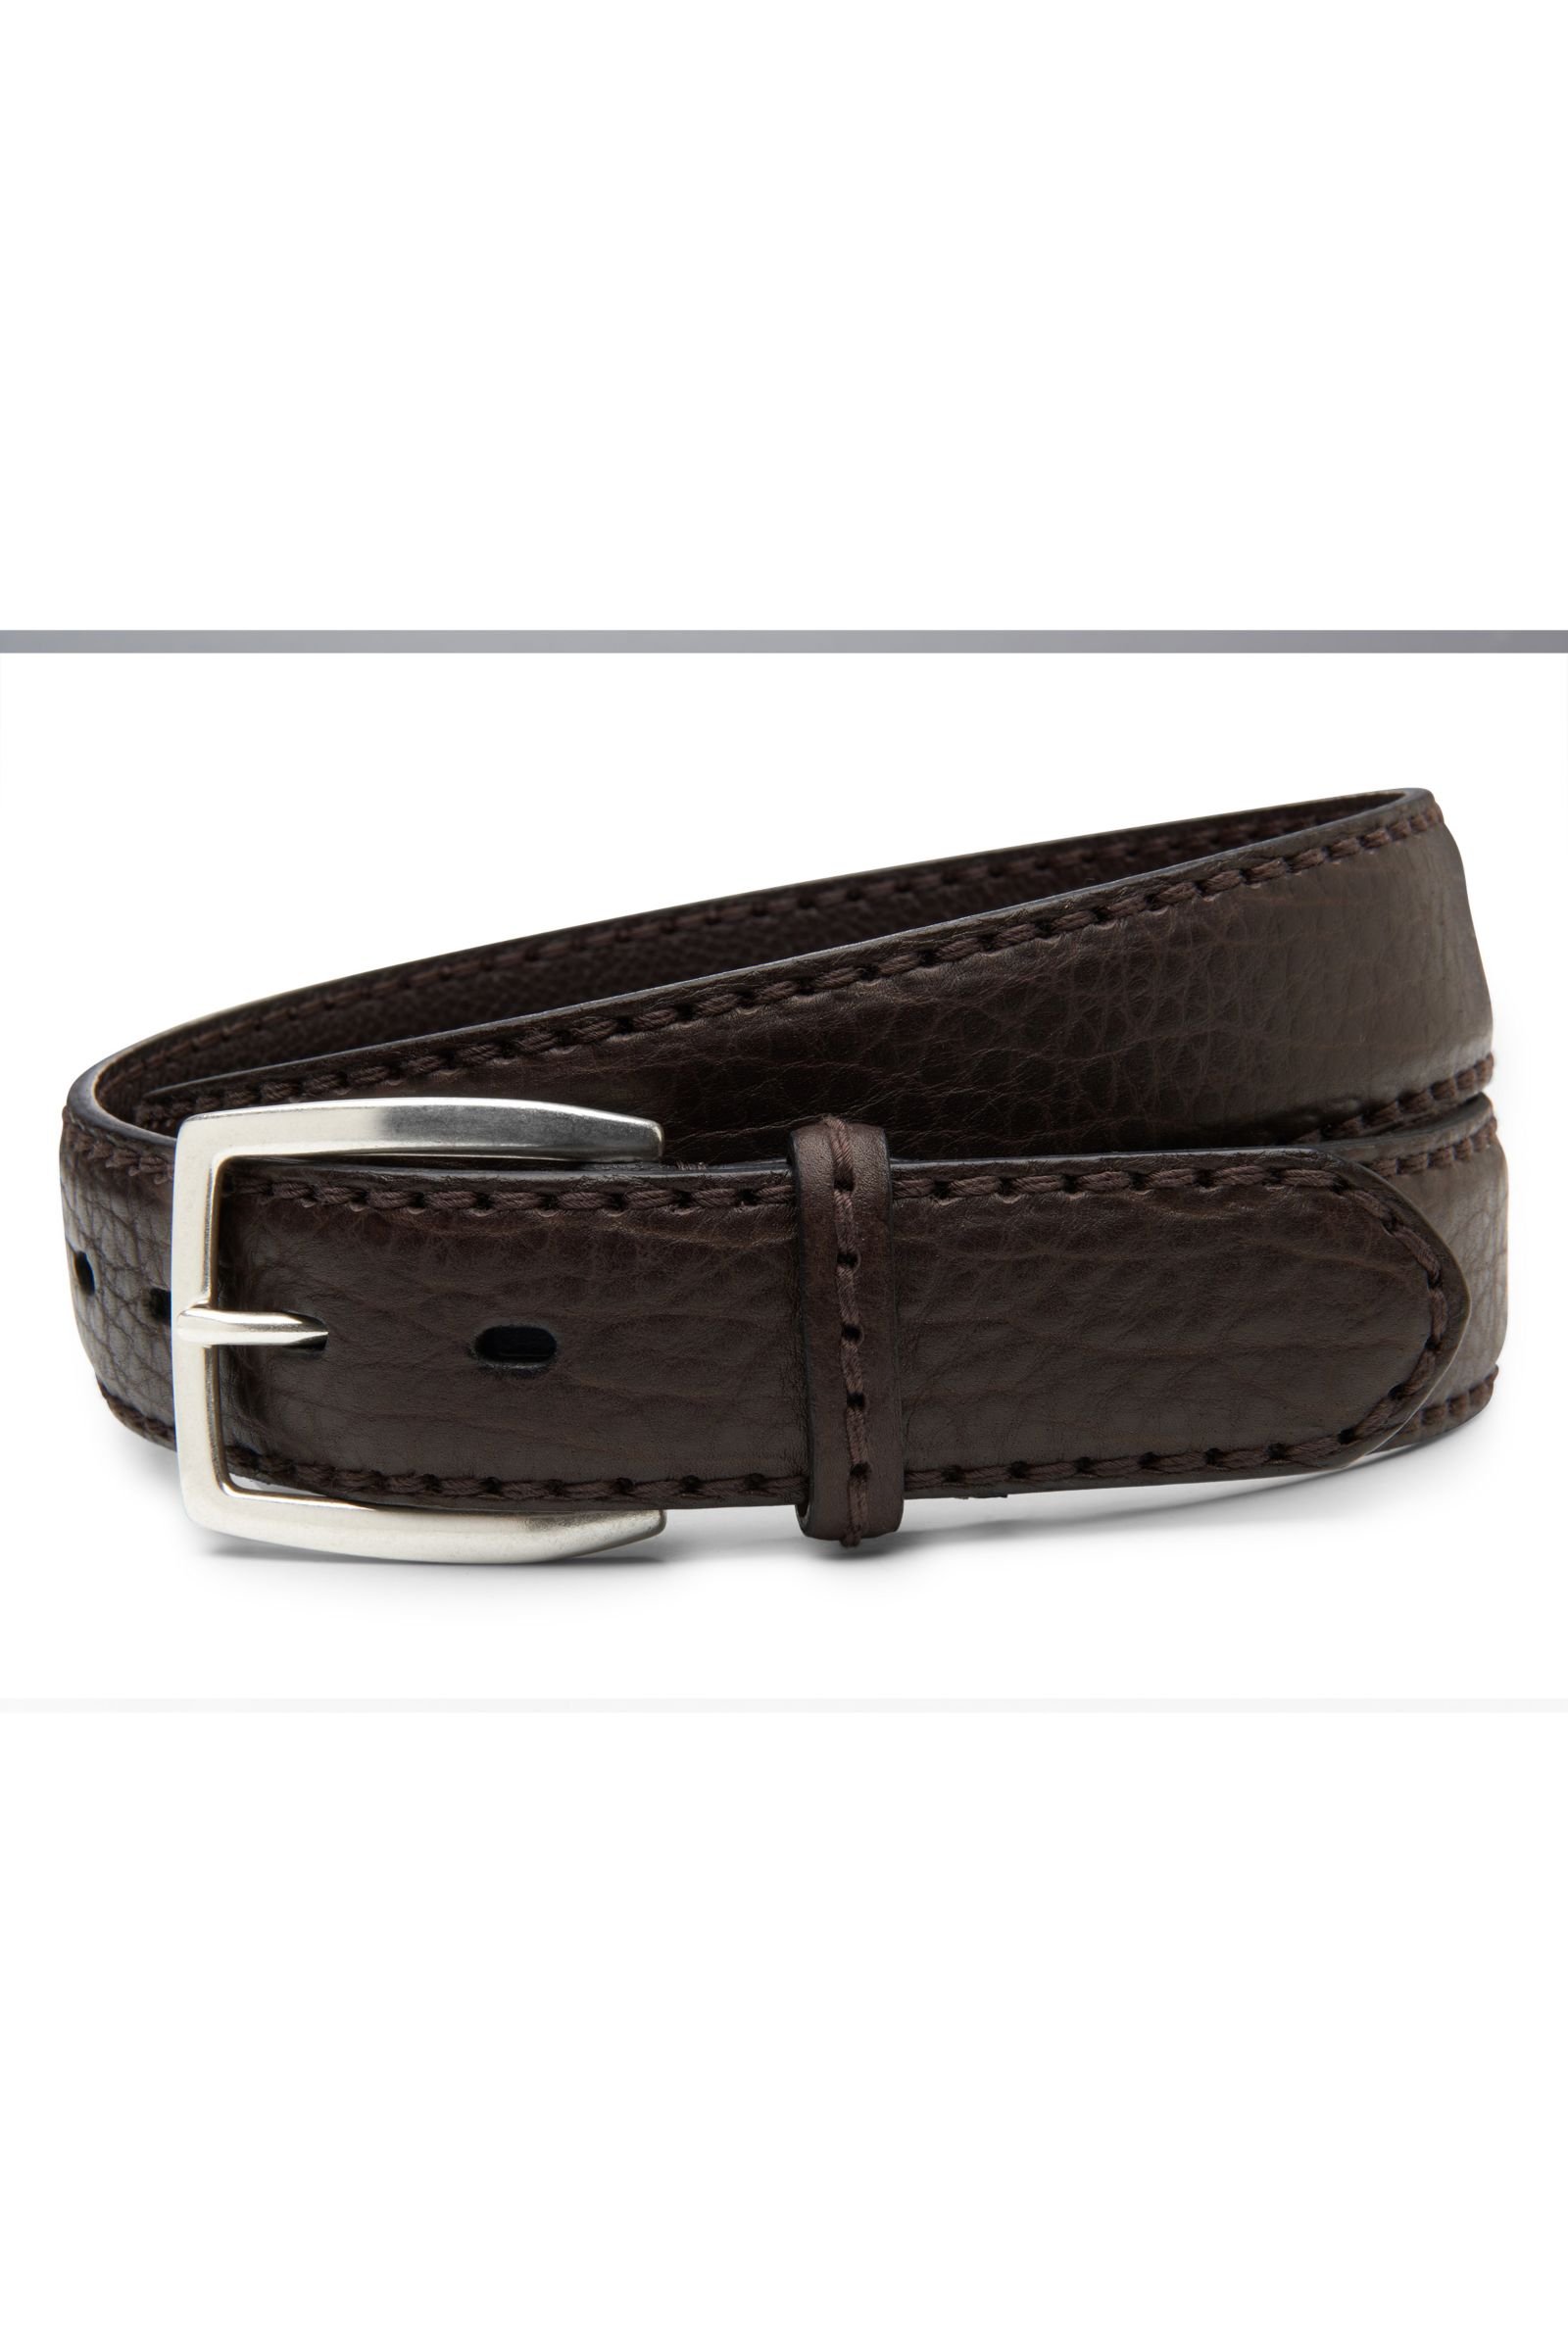 Bison leather belt dark brown